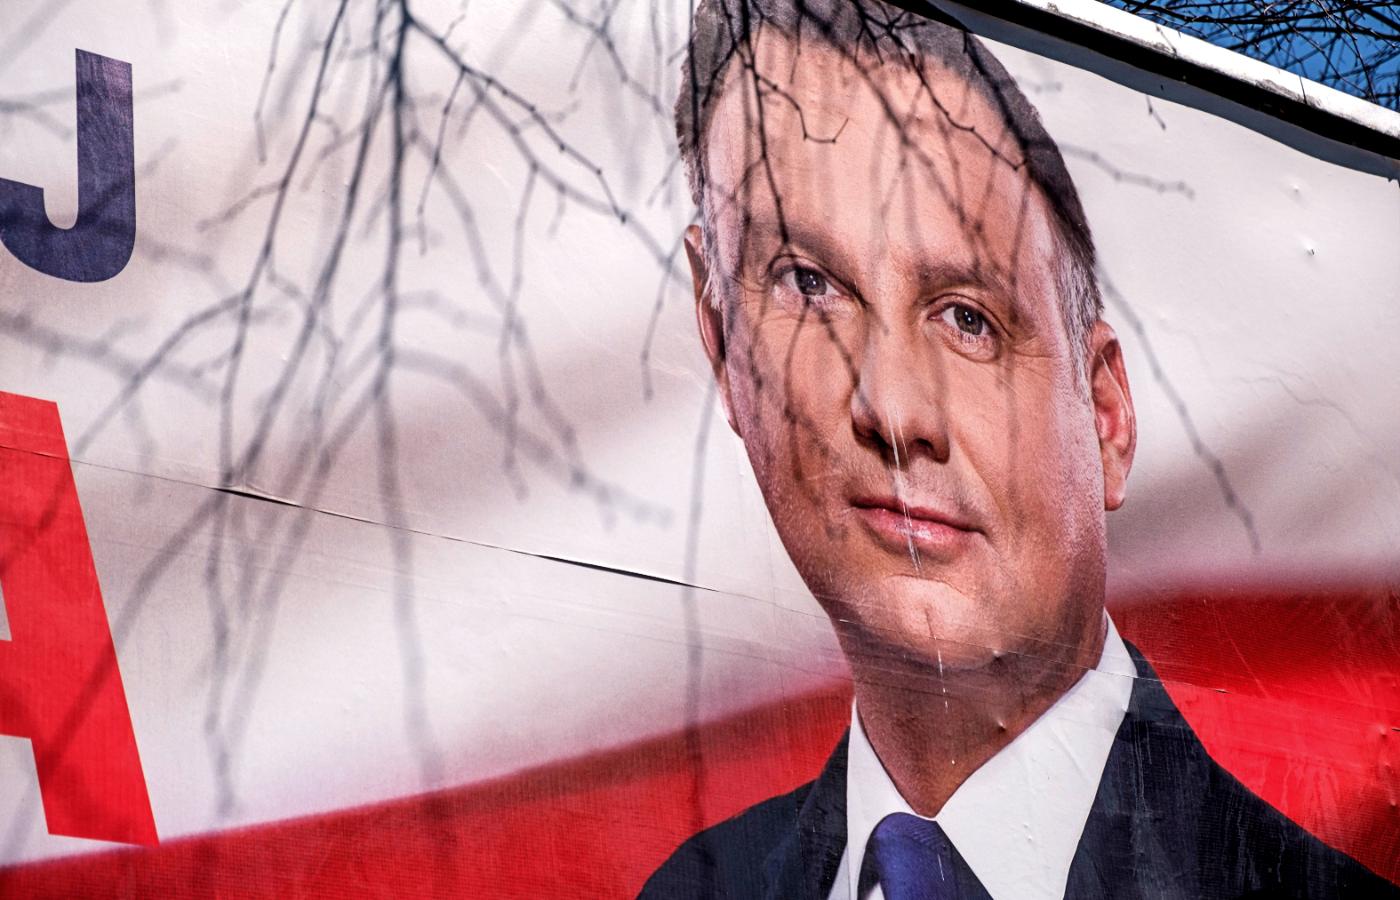 Billboard kandydata na prezydenta Andrzeja Dudy w Rzeszowie